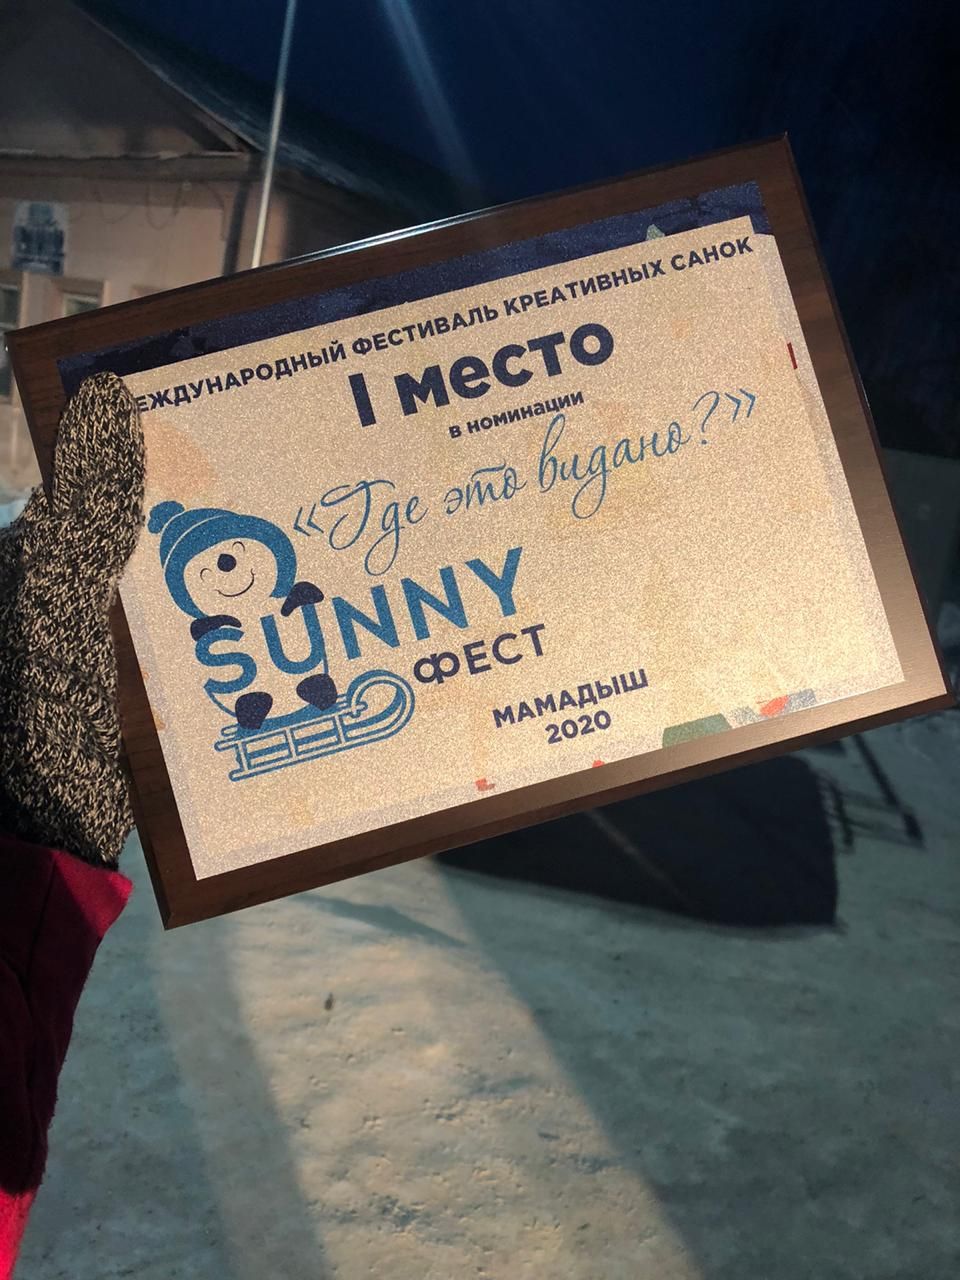 Заинские сани стали победителями в номинации фестиваля «SunnyФЕСТ»